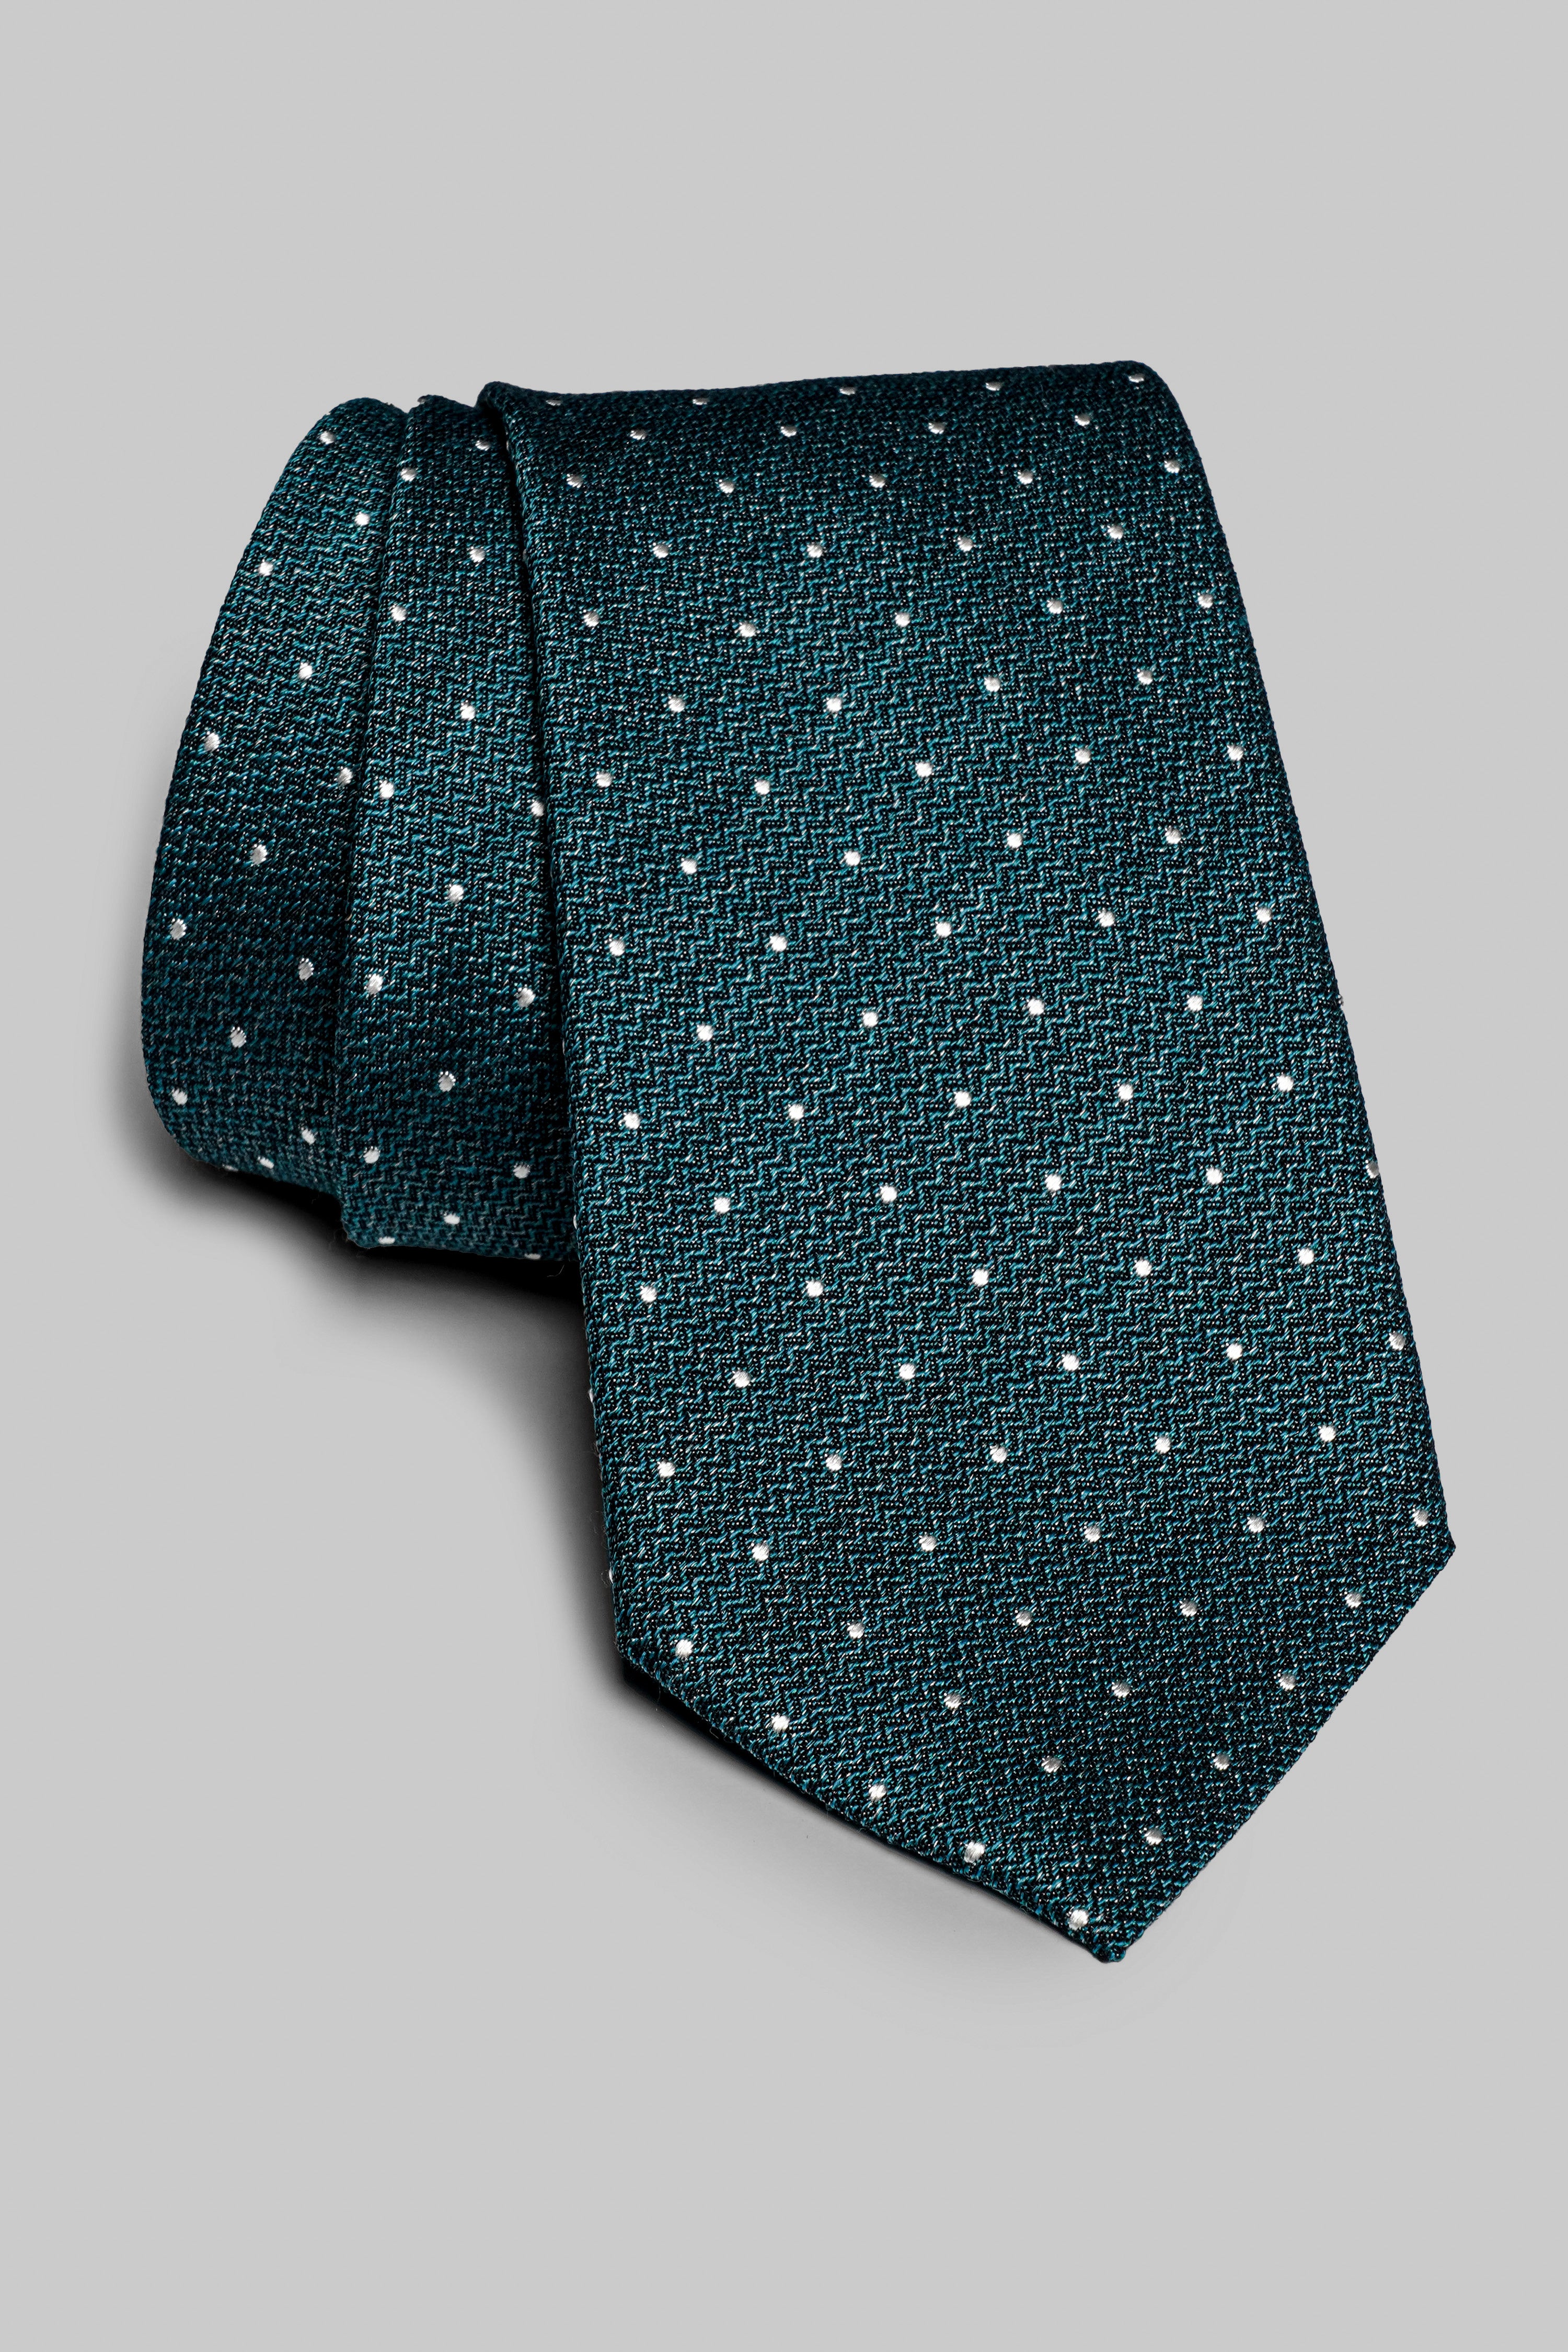 Vue alternative Cravate tissée Pindot en bleu sarcelle